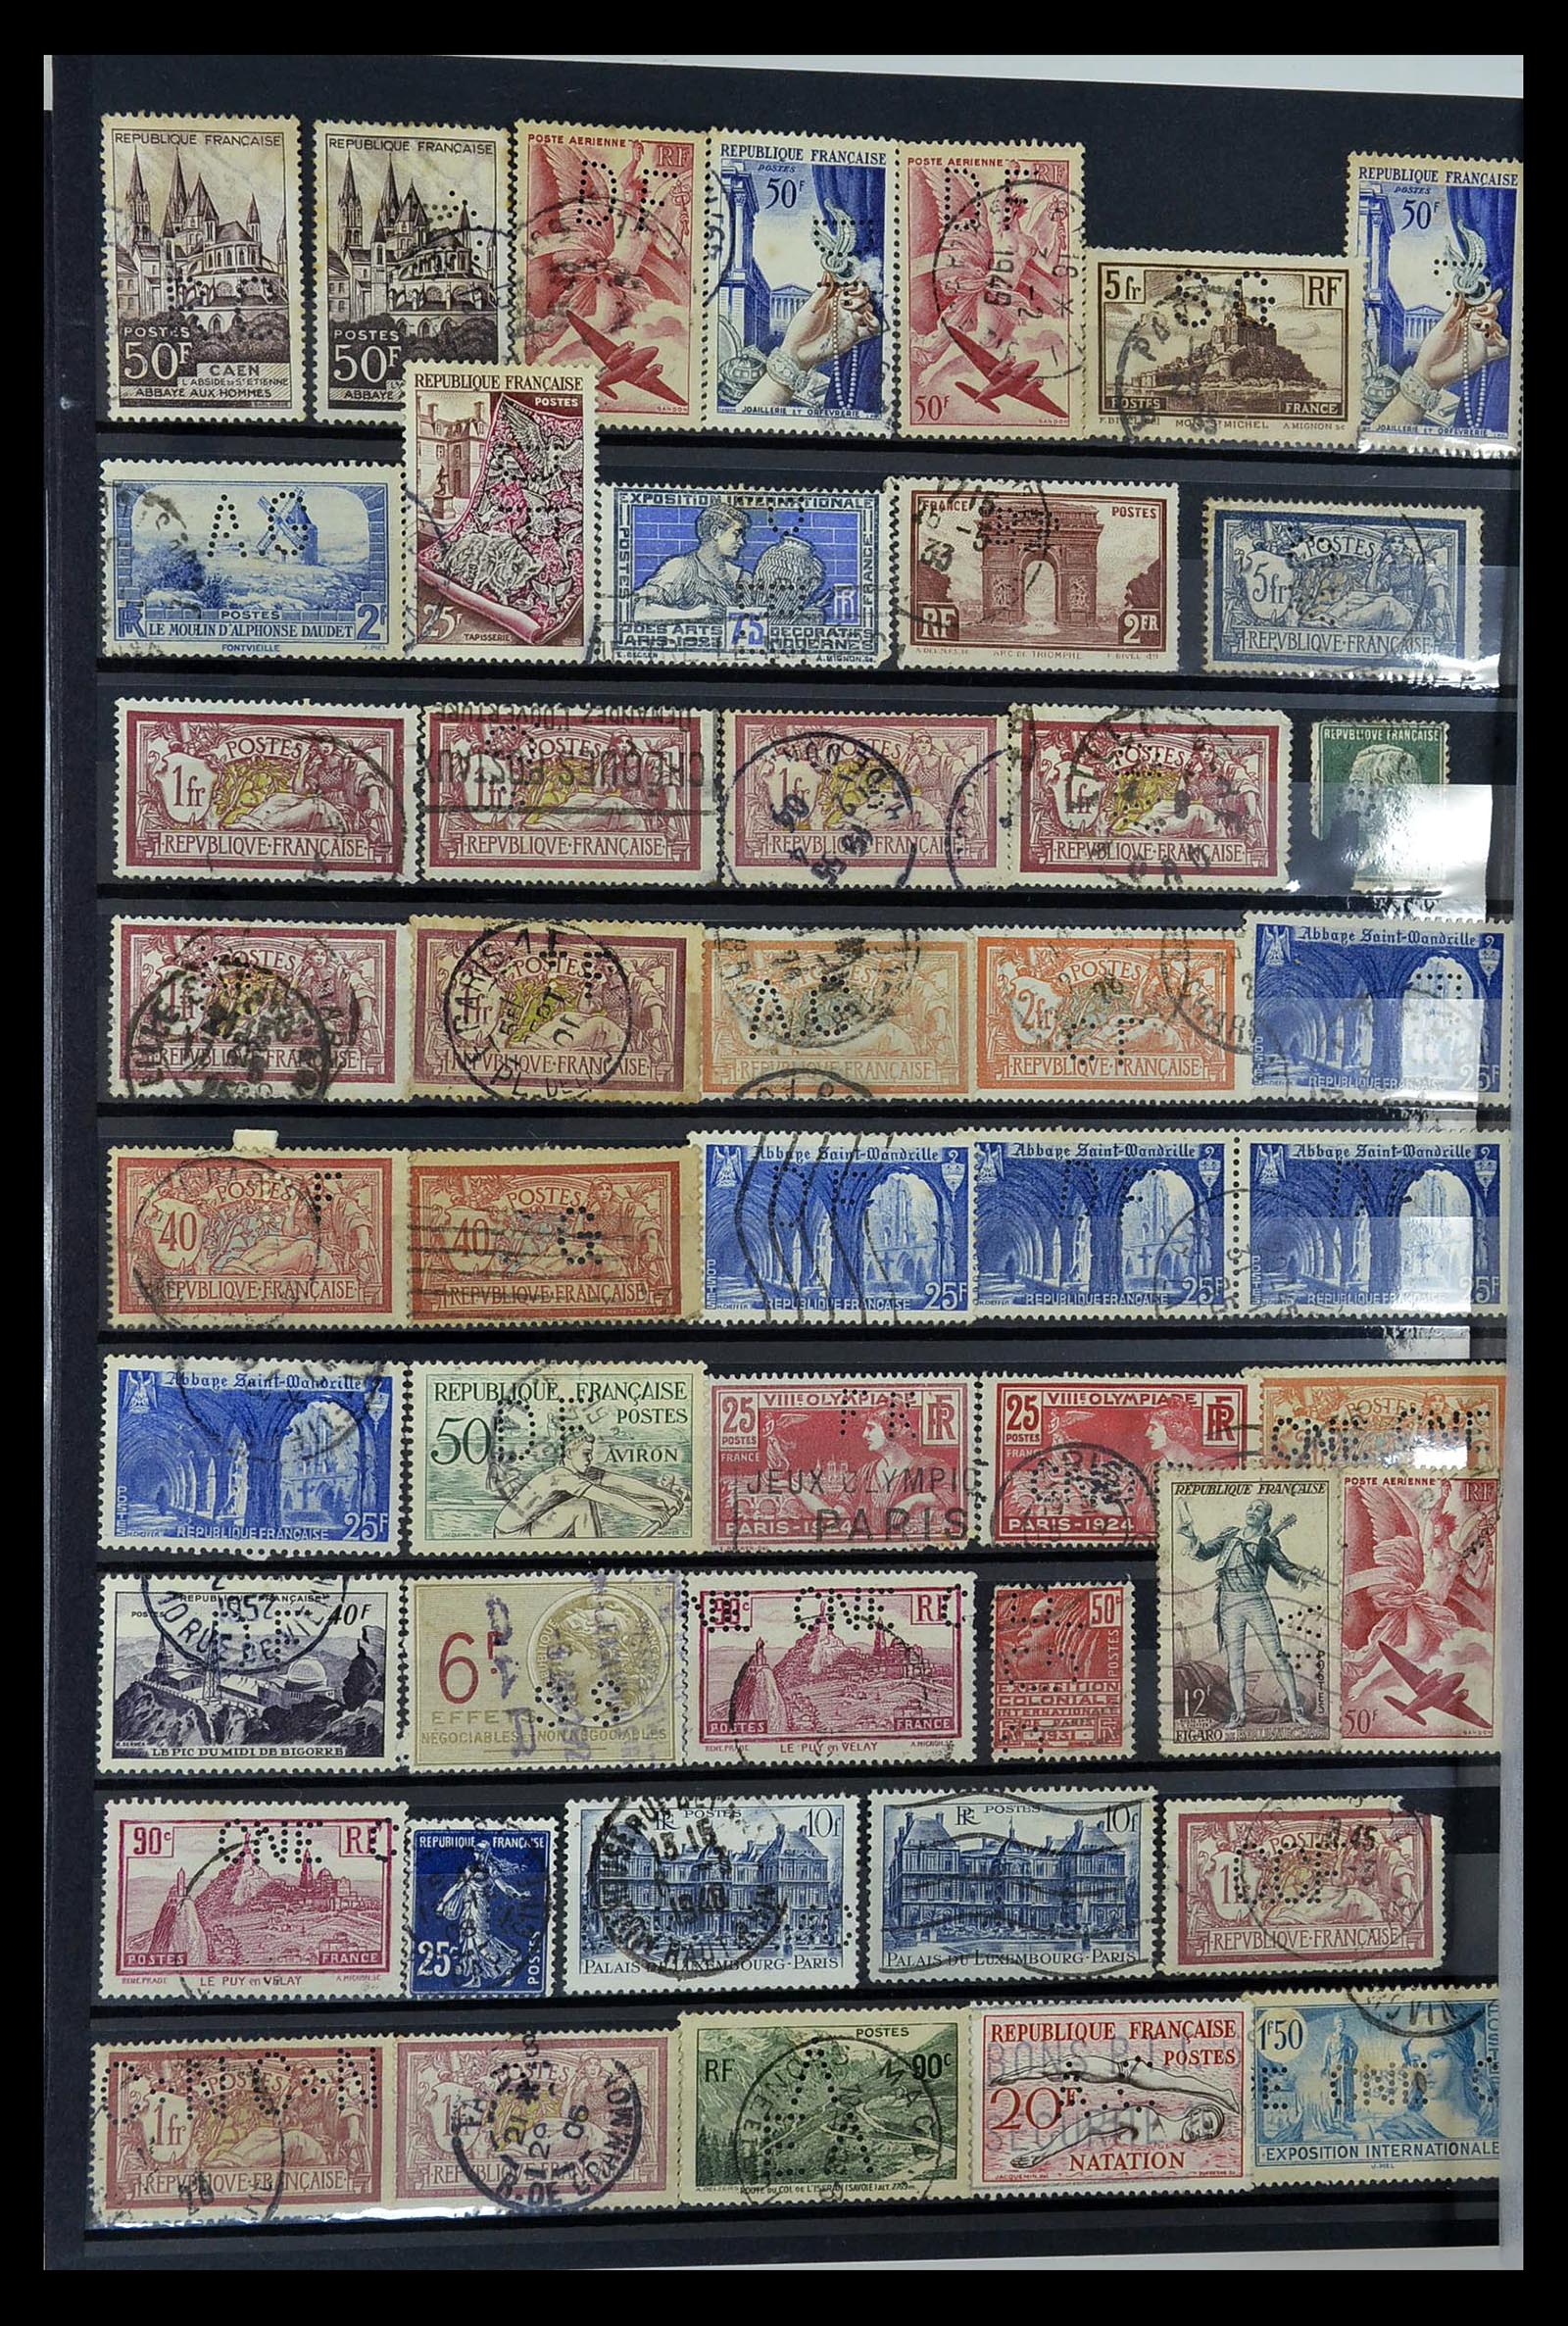 34968 036 - Postzegelverzameling 34968 Wereld perfins 1890-1965.